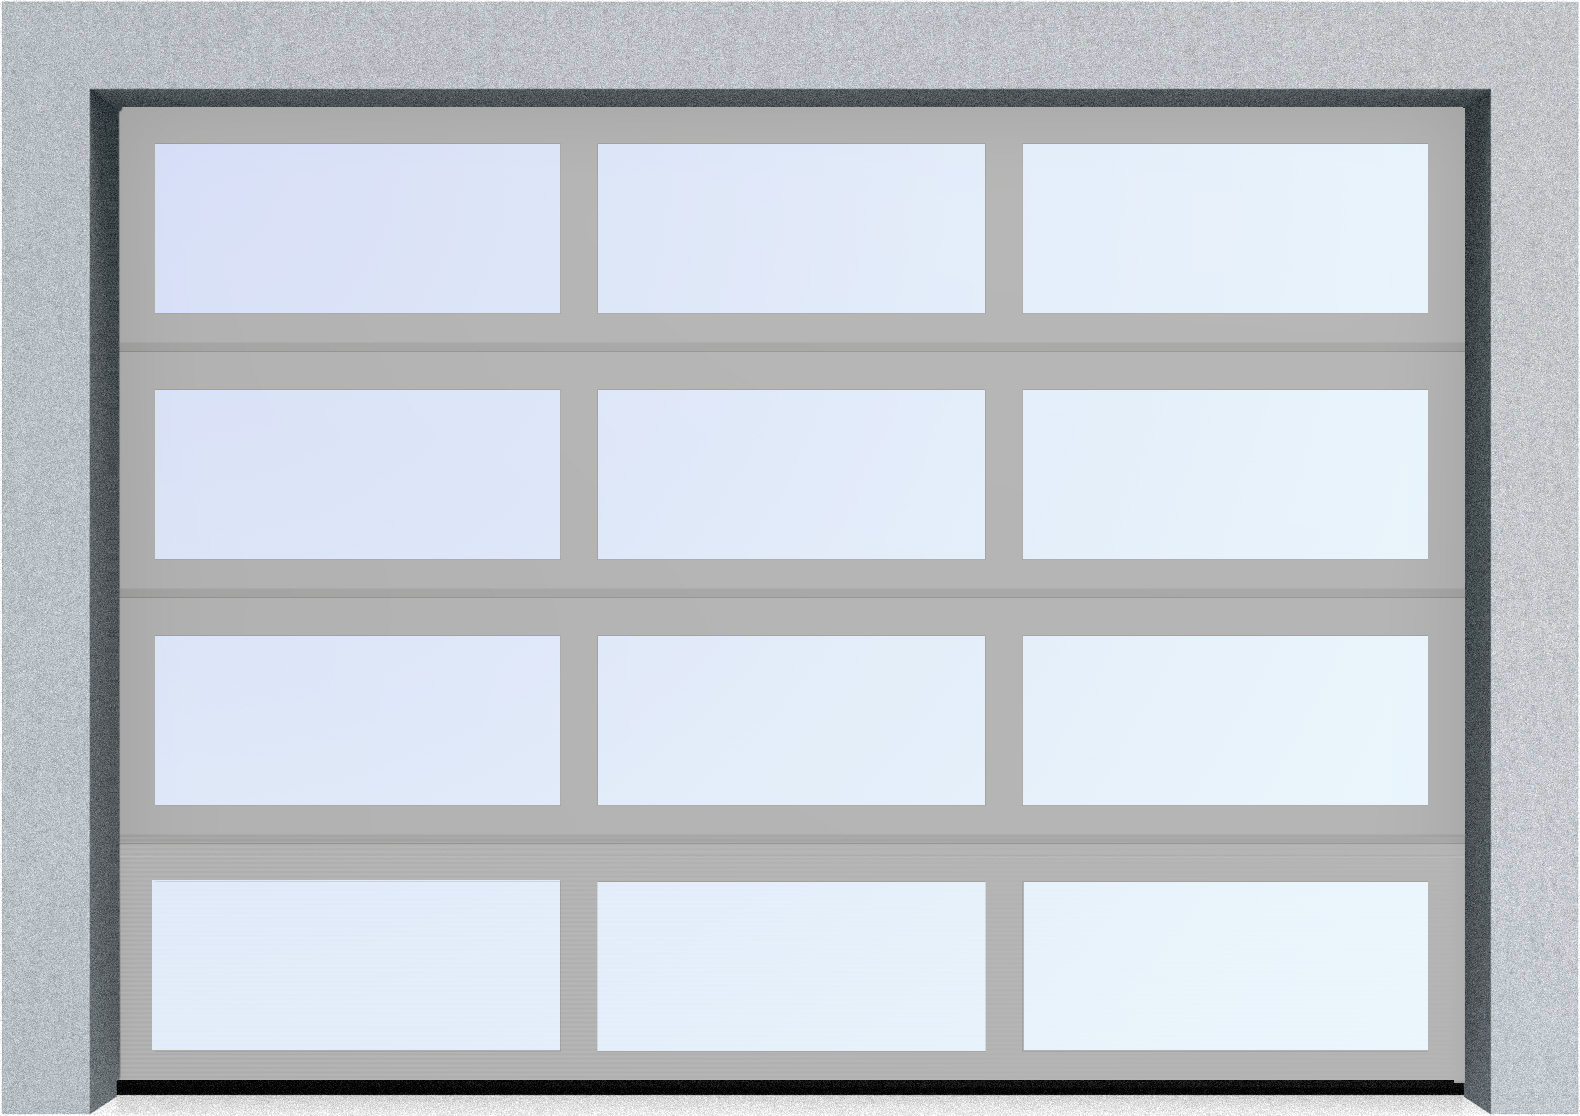  Секционные панорамные ворота серии AluTrend (АЛП) 5250х4500 нижняя панель стандартные цвета, фото 9 